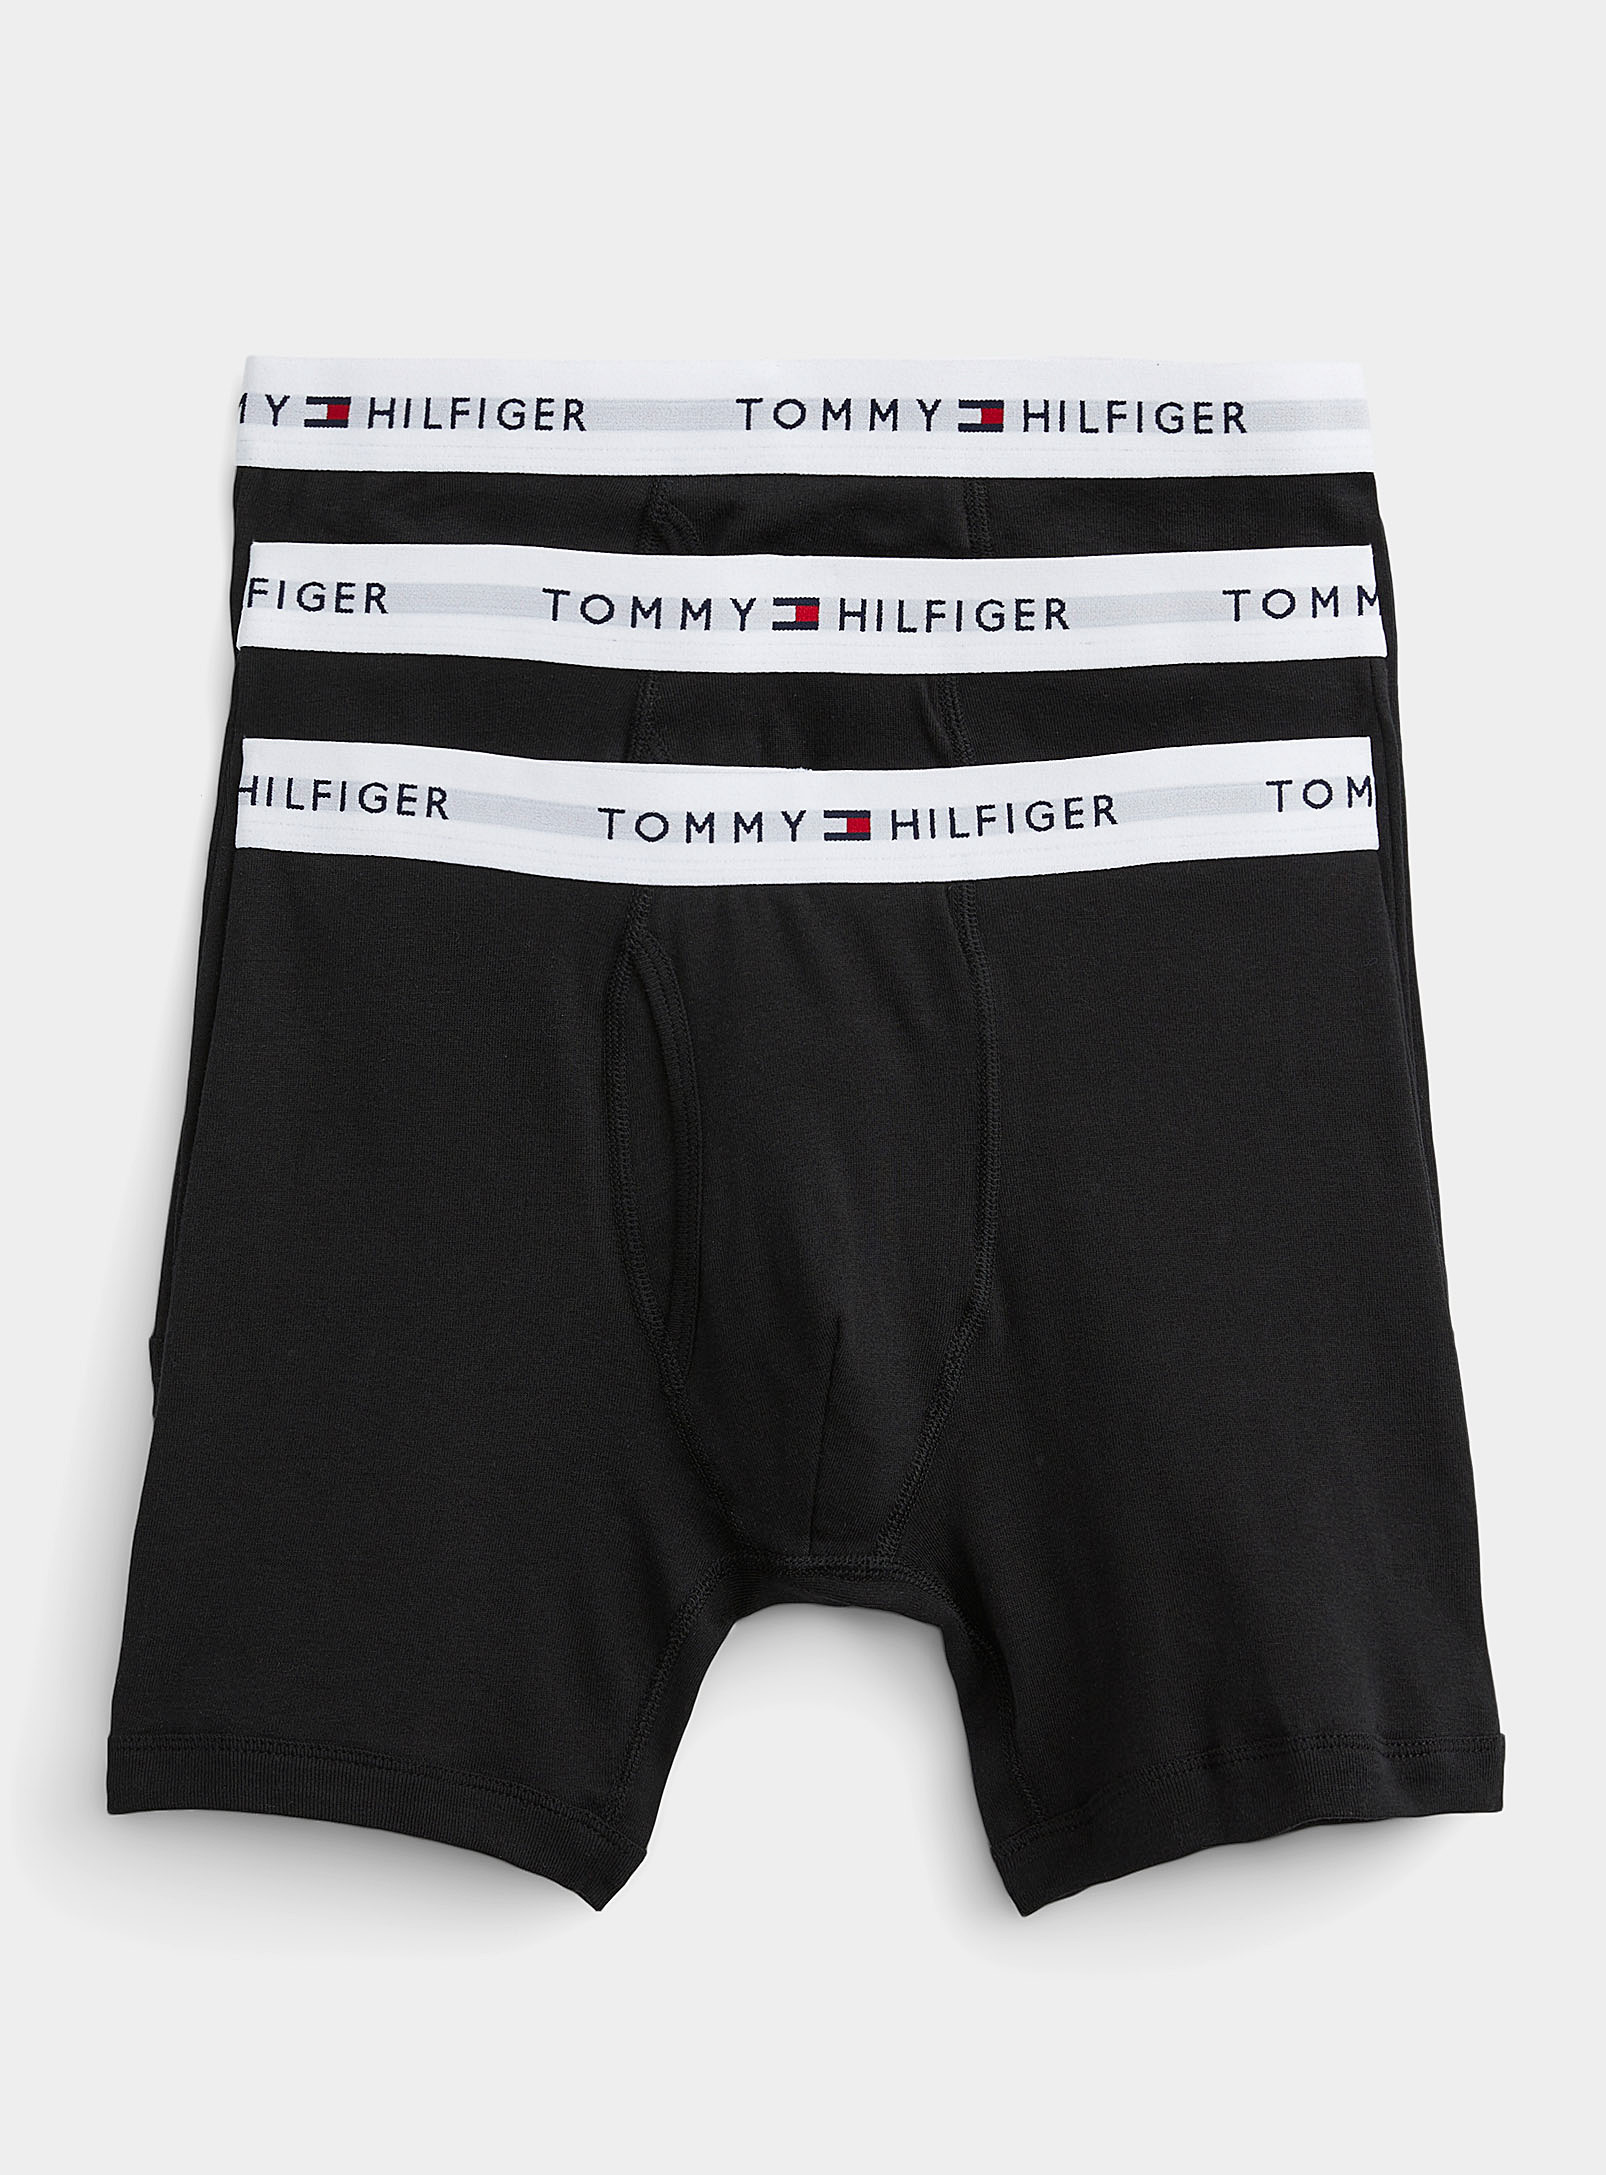 Tommy Hilfiger - Men's Pure cotton boxer brief 3-pack